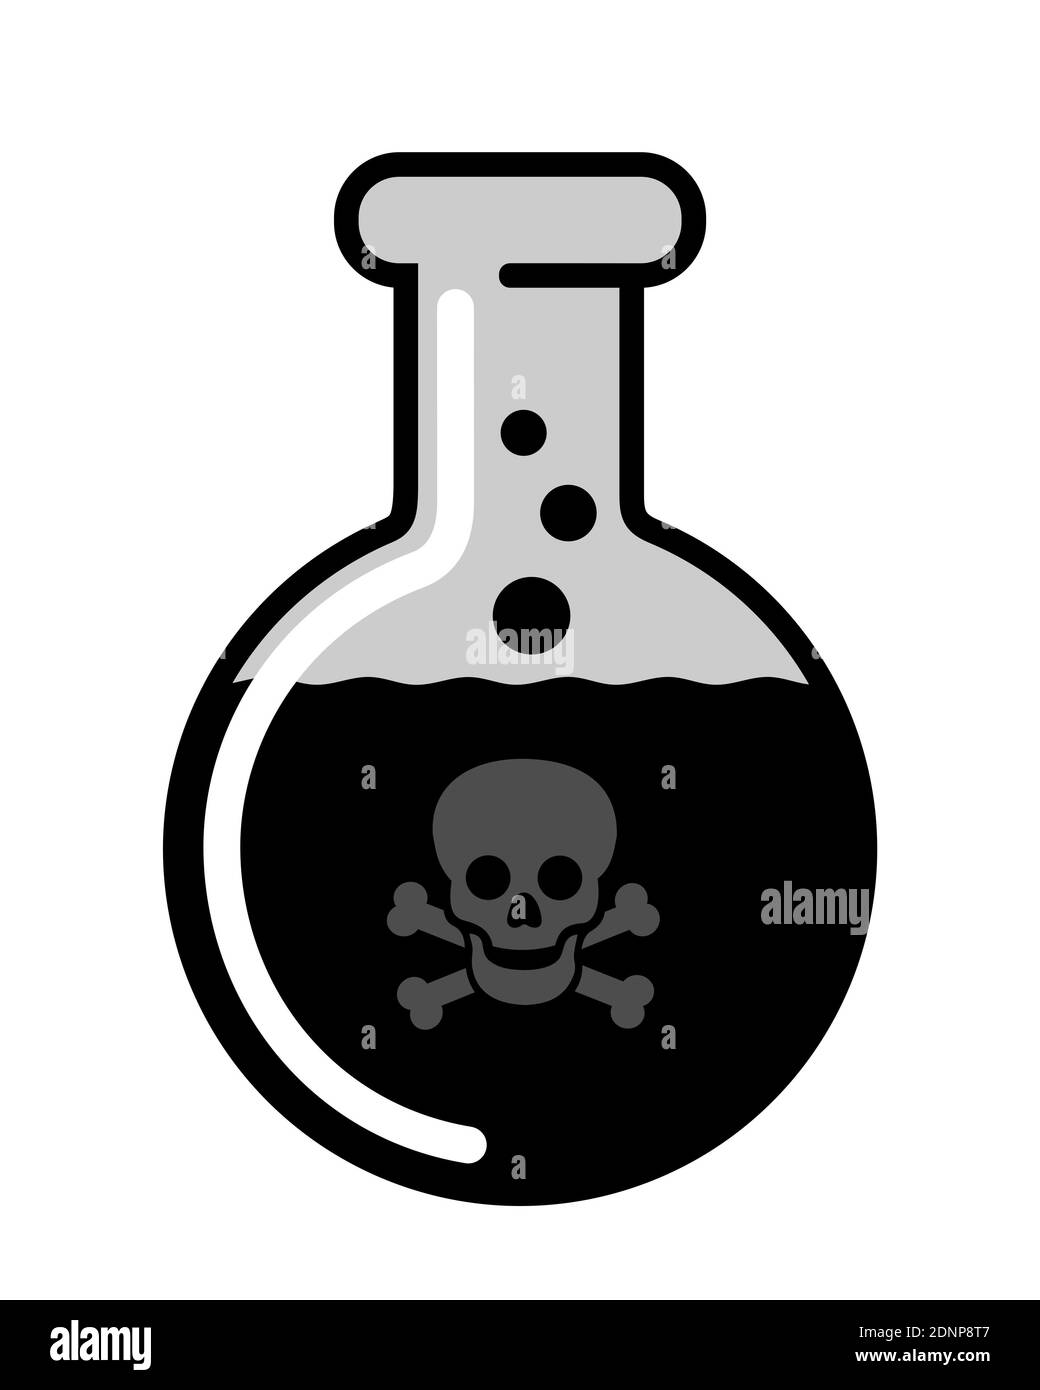 Liquido nero come danegroso, tossico e letale veleno velenoso - la sostanza sta causando morte mortale dopo aver bevuto. Illustrazione vettoriale isolata in bianco. Foto Stock